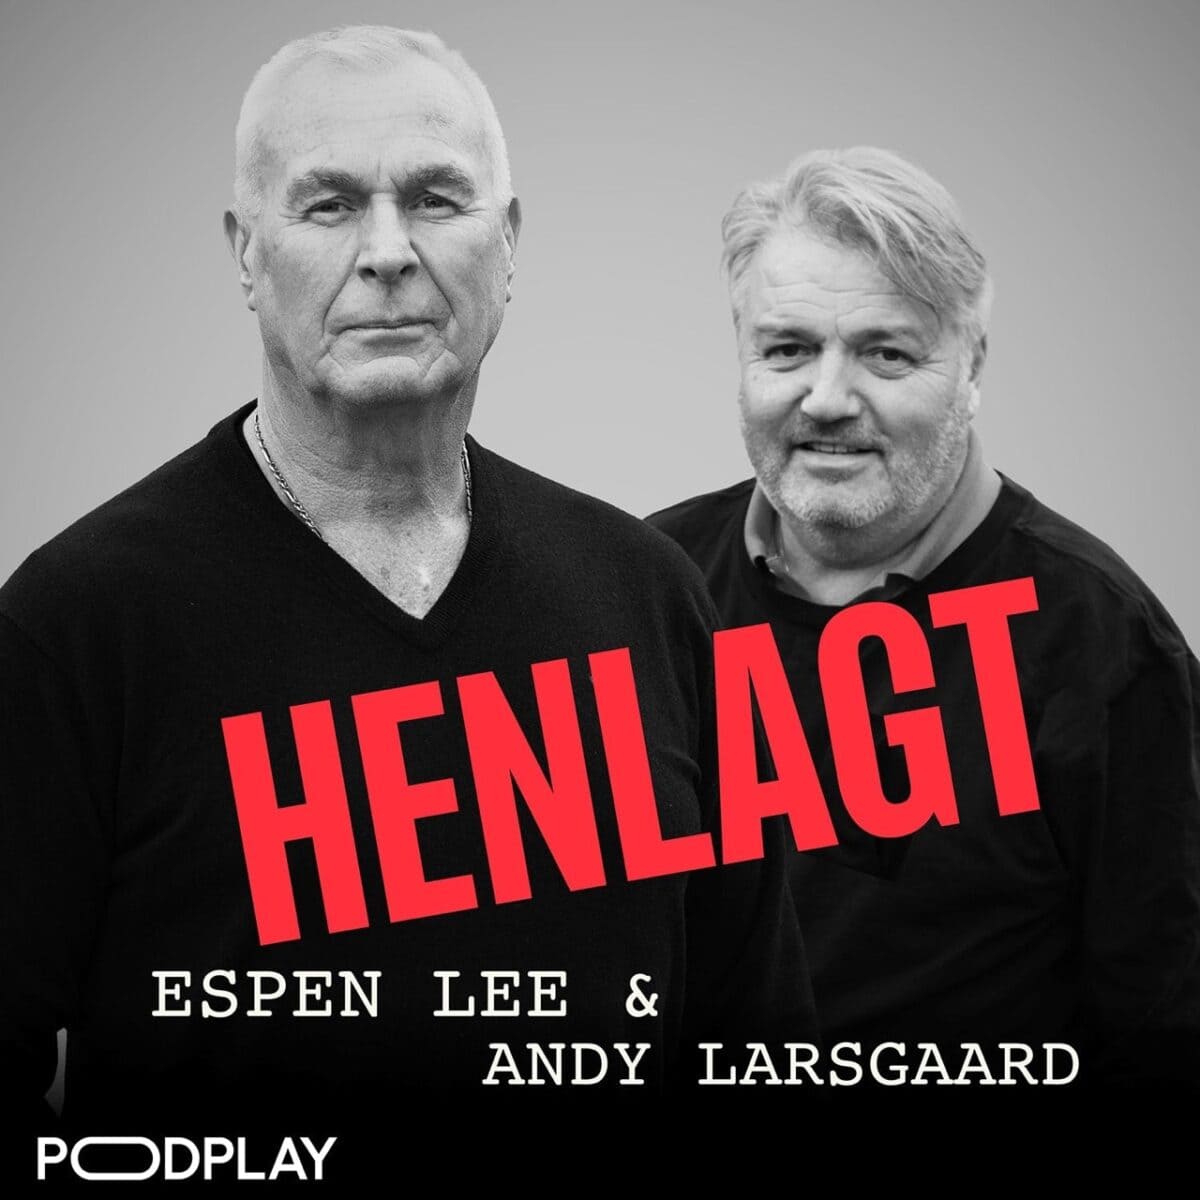 HENLAGT – Espen Lee & Andy Larsgaard